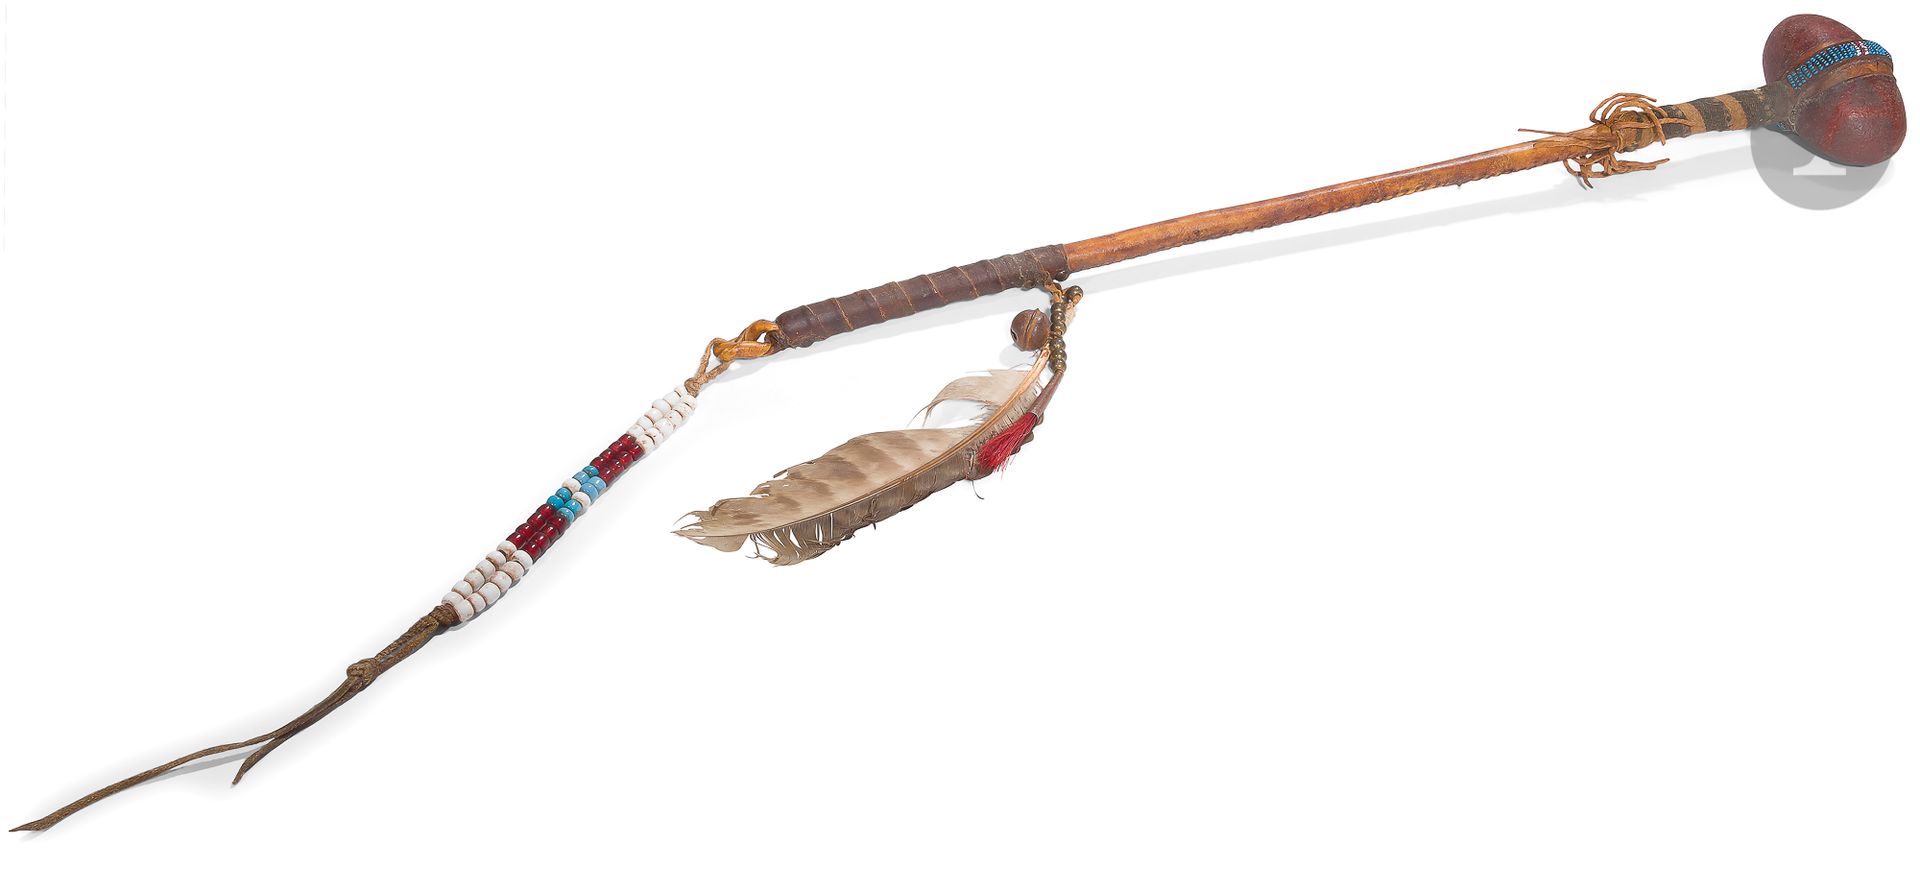 Null 平原印第安人的头带。
由一块涂有红色的椭圆形石头组成，用珠子的皮革绑住，放在一个覆盖着皮肤的手柄上，用织物、玻璃珠和黄铜装饰着羽毛。
长度：61厘米B&hellip;